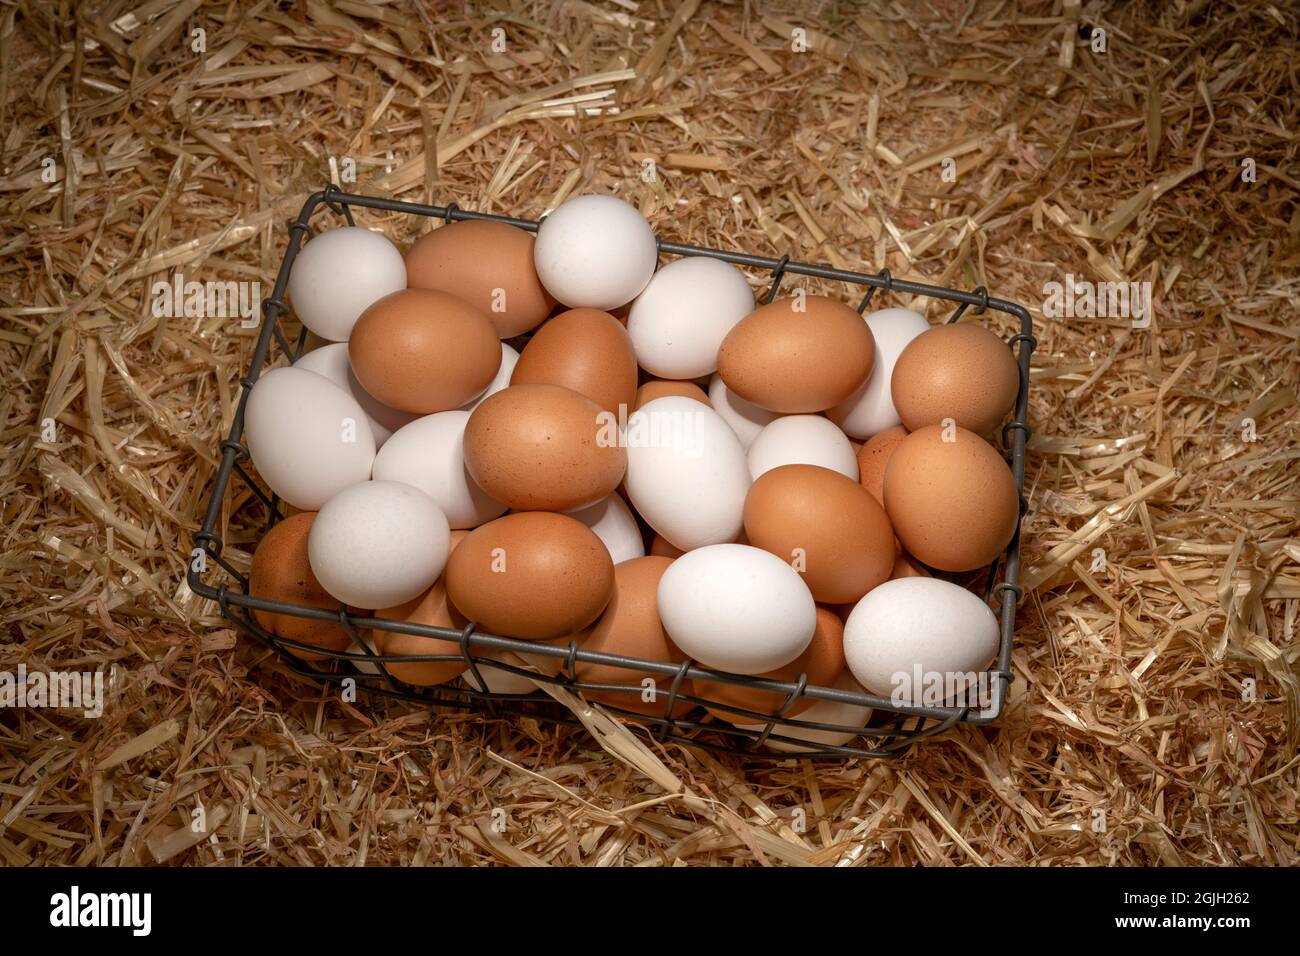 Un piccolo cestino di uova fresche di colore marrone e bianco che siede su uno strato di fieno in un fienile. Foto Stock